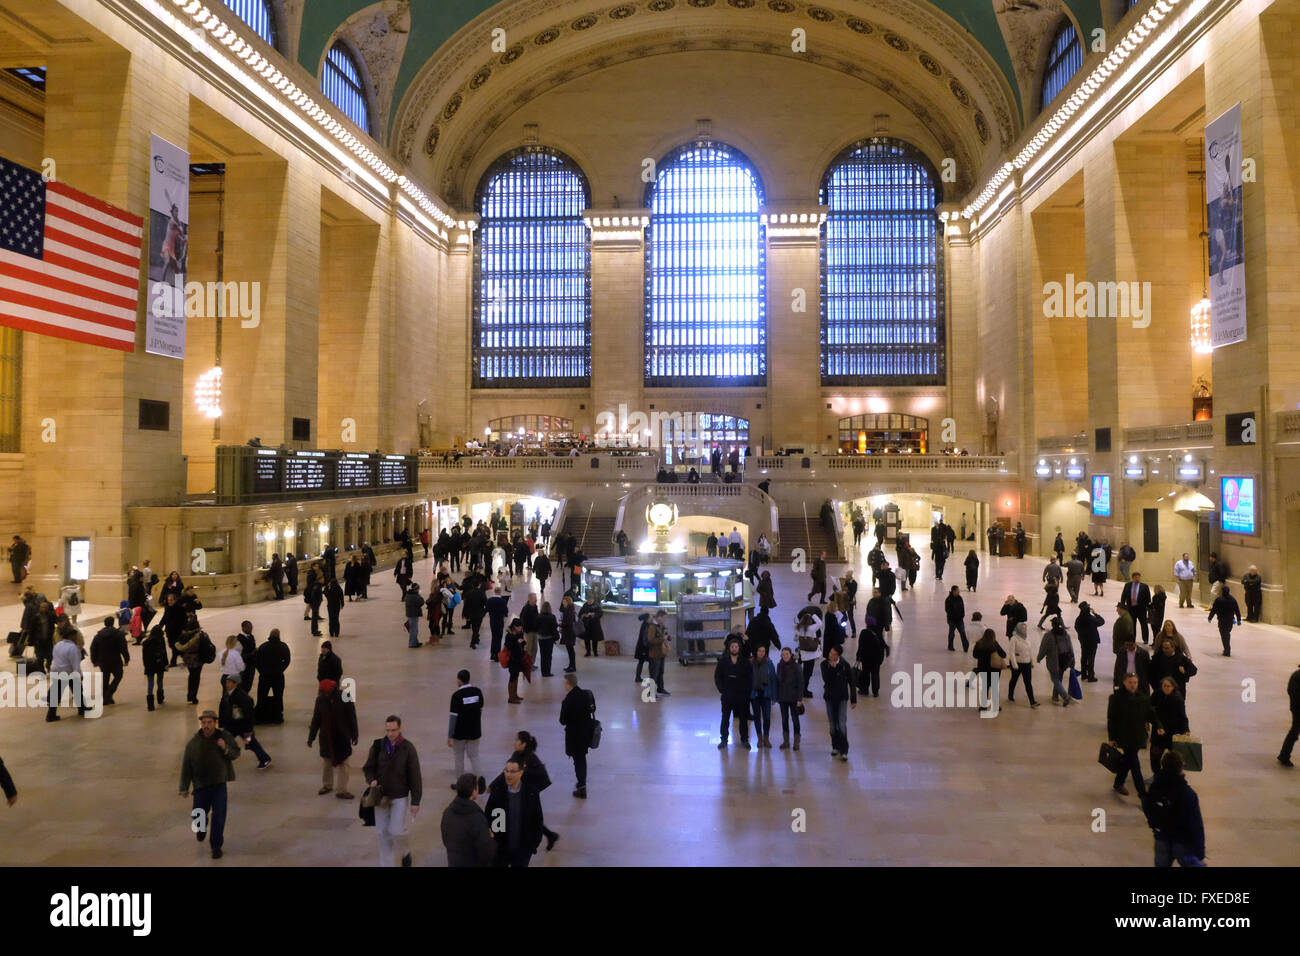 Die Haupthalle des Grand Central Station in New York City, Vereinigte Staaten von Amerika. Stockfoto